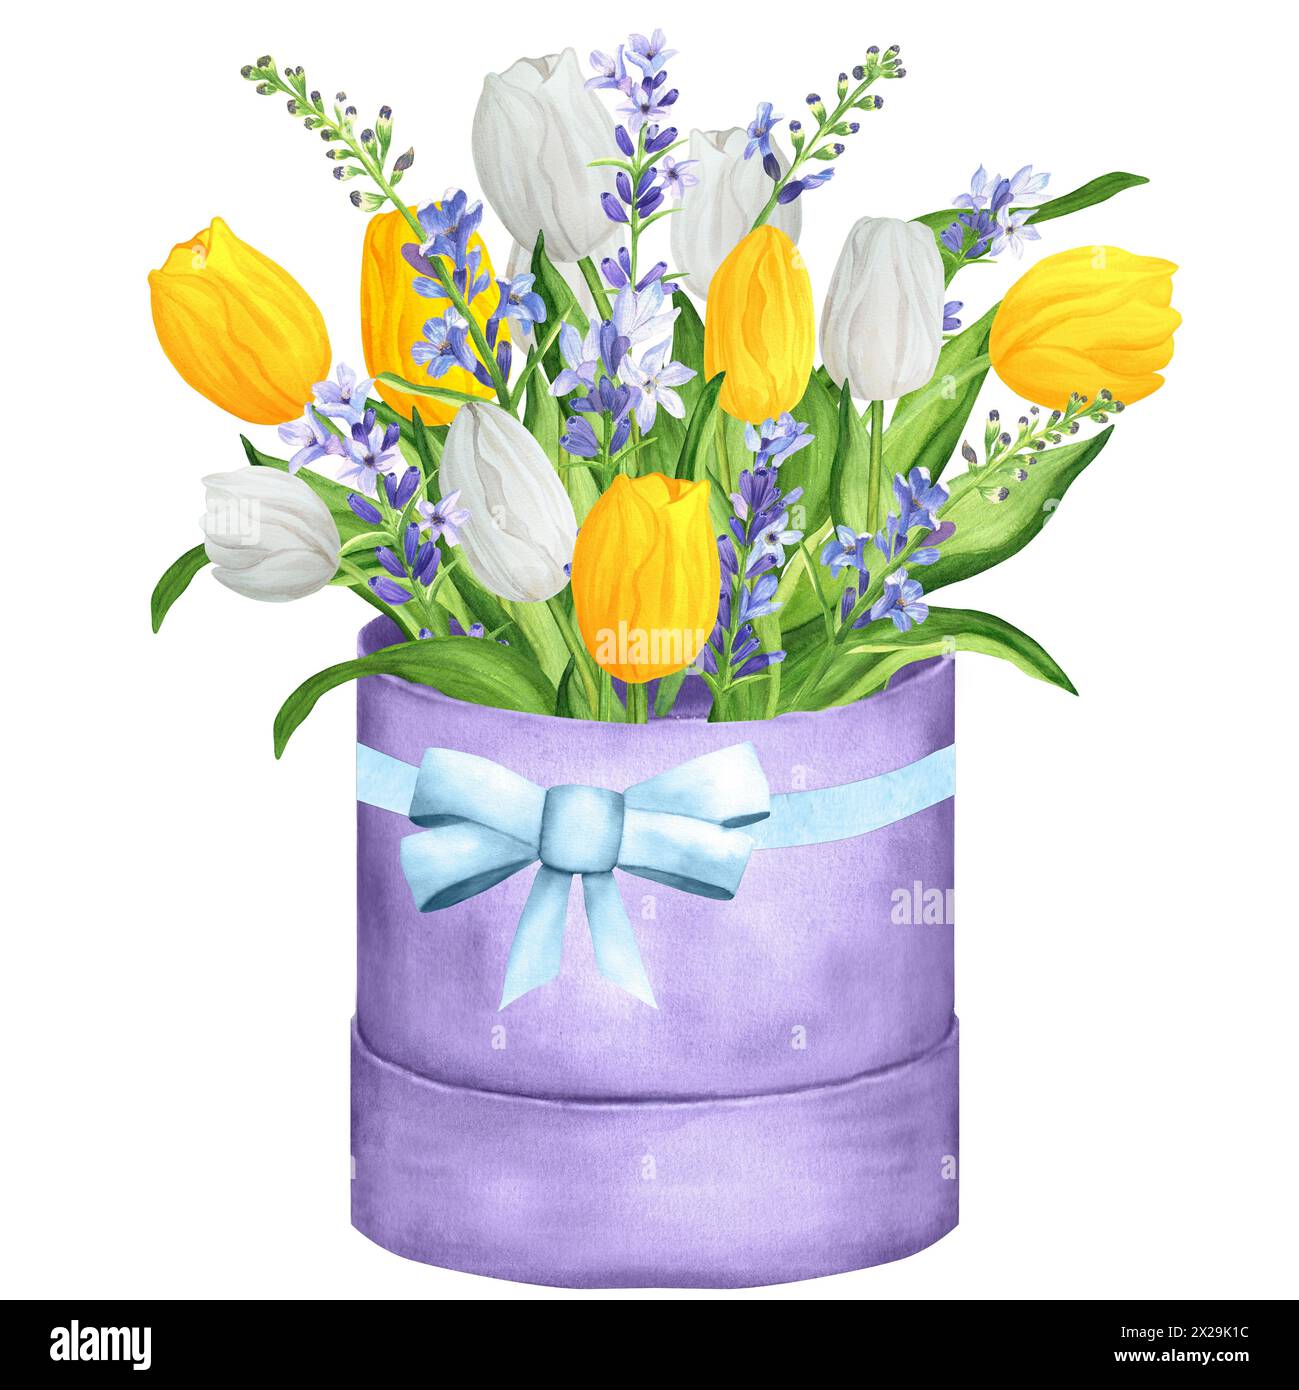 Illustration d'aquarelle dessinée à la main. Bouquet de fleurs avec tulipes blanches et jaunes, lavande et feuilles vertes. Bouquet de vacances de printemps dans une boîte Banque D'Images